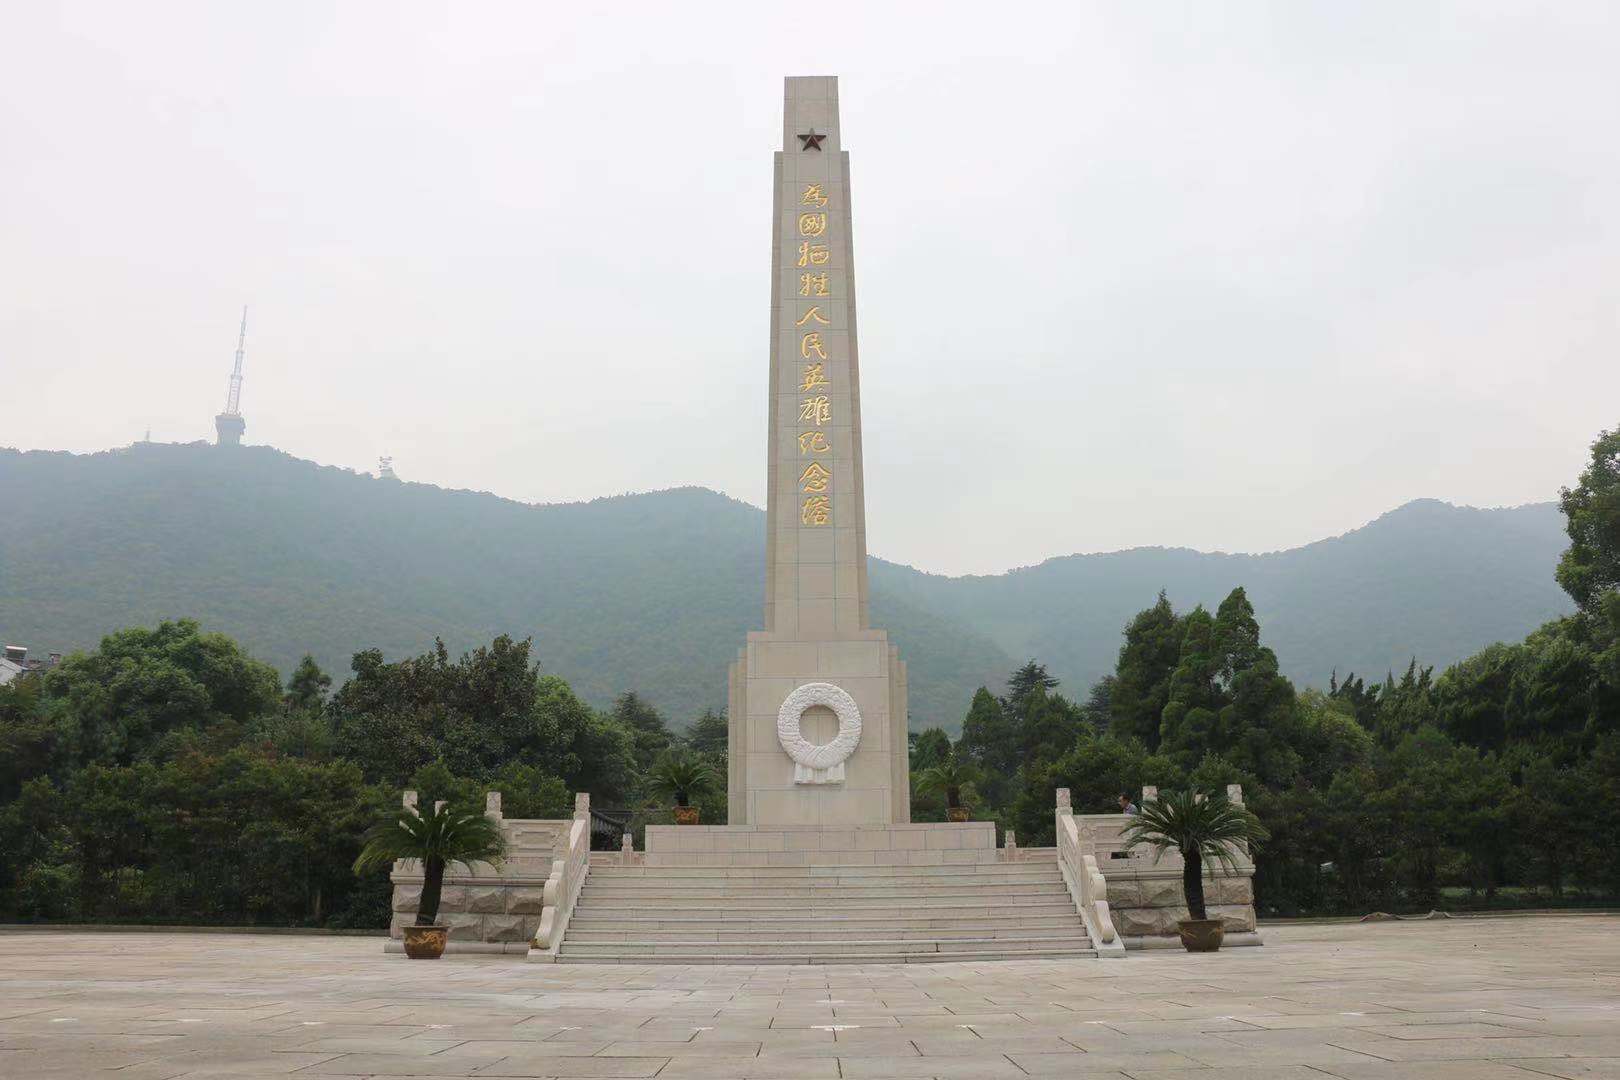 无锡市革命烈士陵园:在惠山北麓瞻仰永恒丰碑